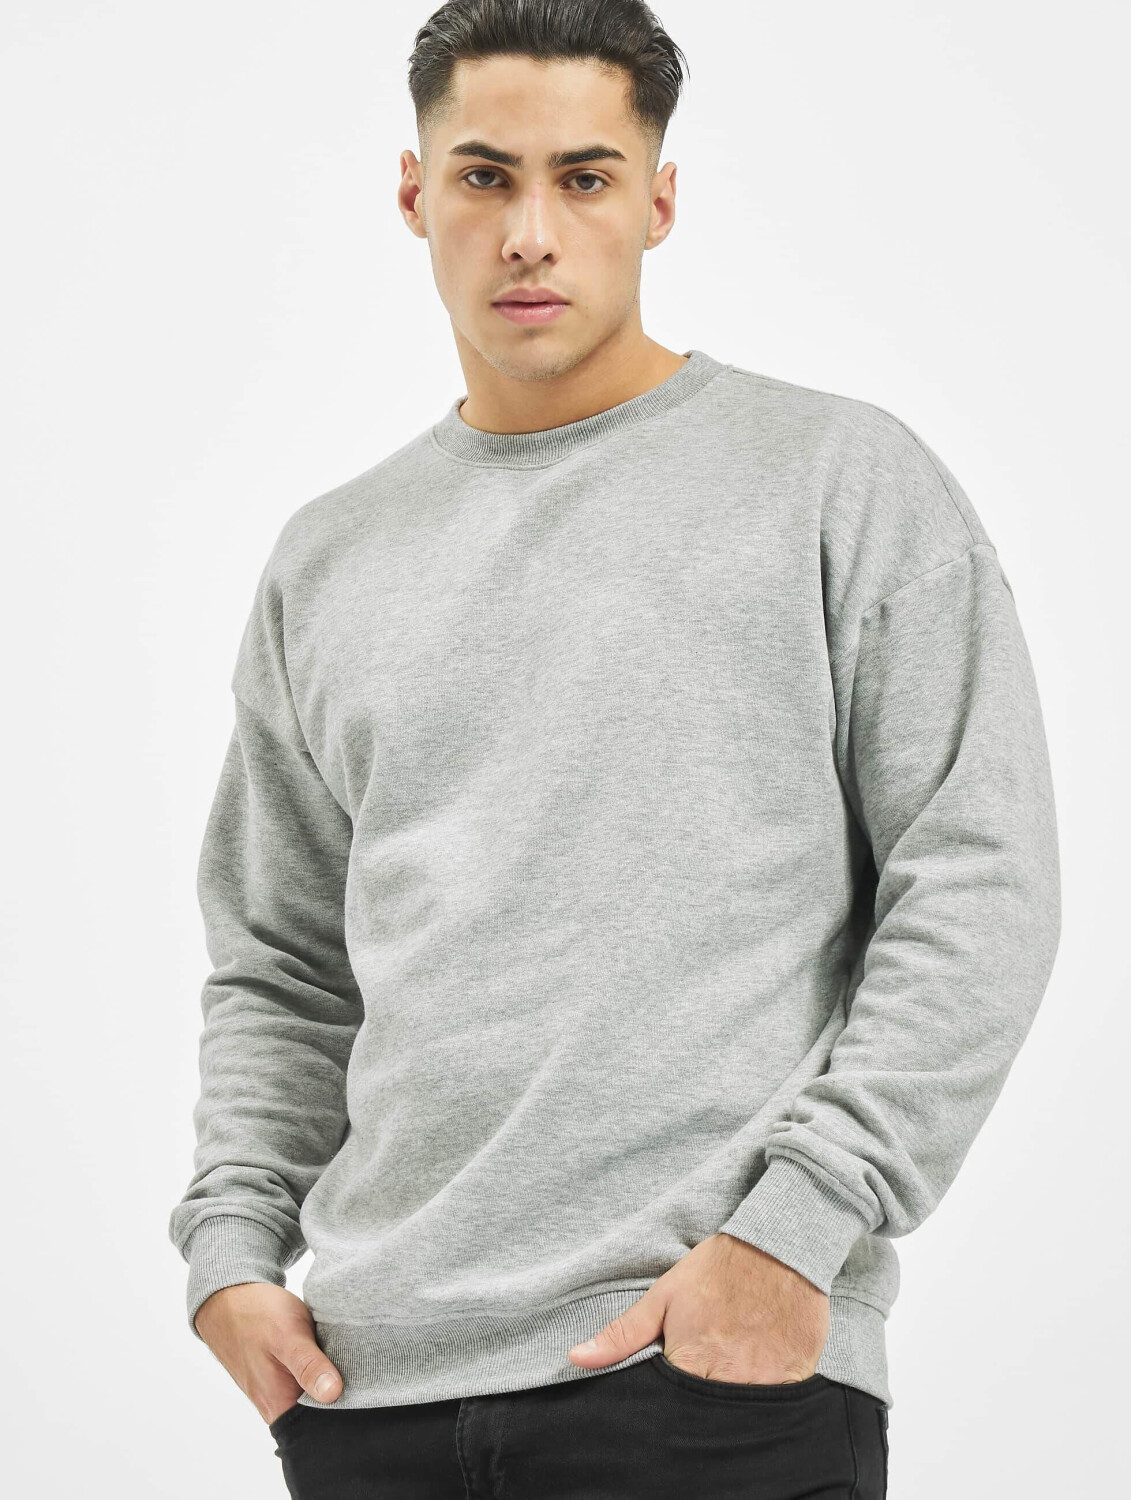 Urban Classics Sweatshirt Camden grey (TB1591GRY) 22,99 Preisvergleich ab € | bei